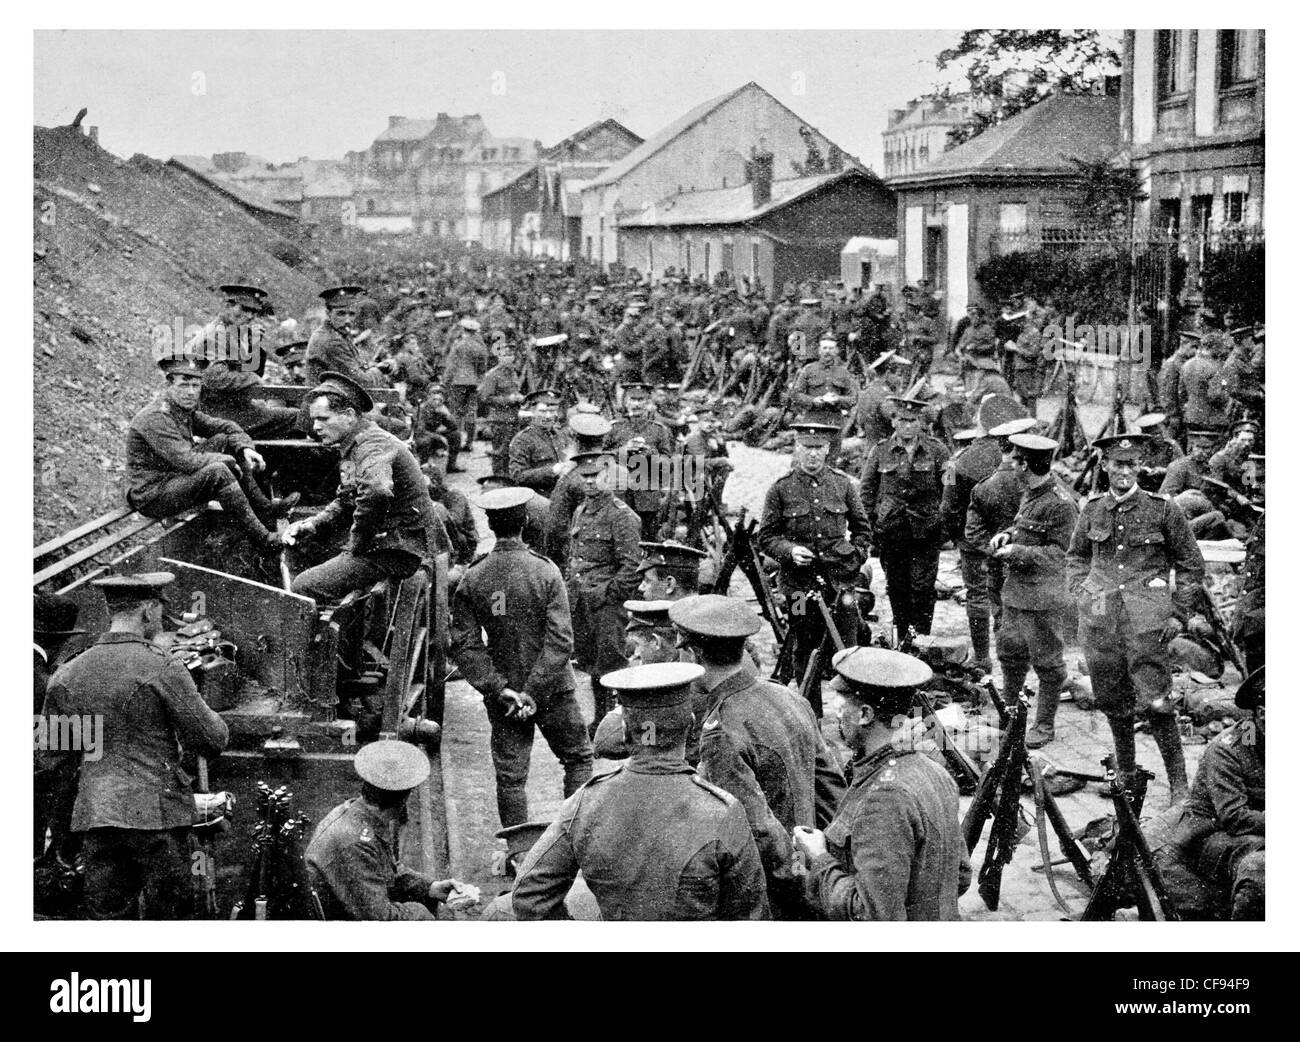 Britische Infanterie ruht in einem Dorf in Frankreich Armee Regiment Unterbrechung Ruhe Stadt Artillerie Rifle Corps sicher Schlacht müde Stockfoto